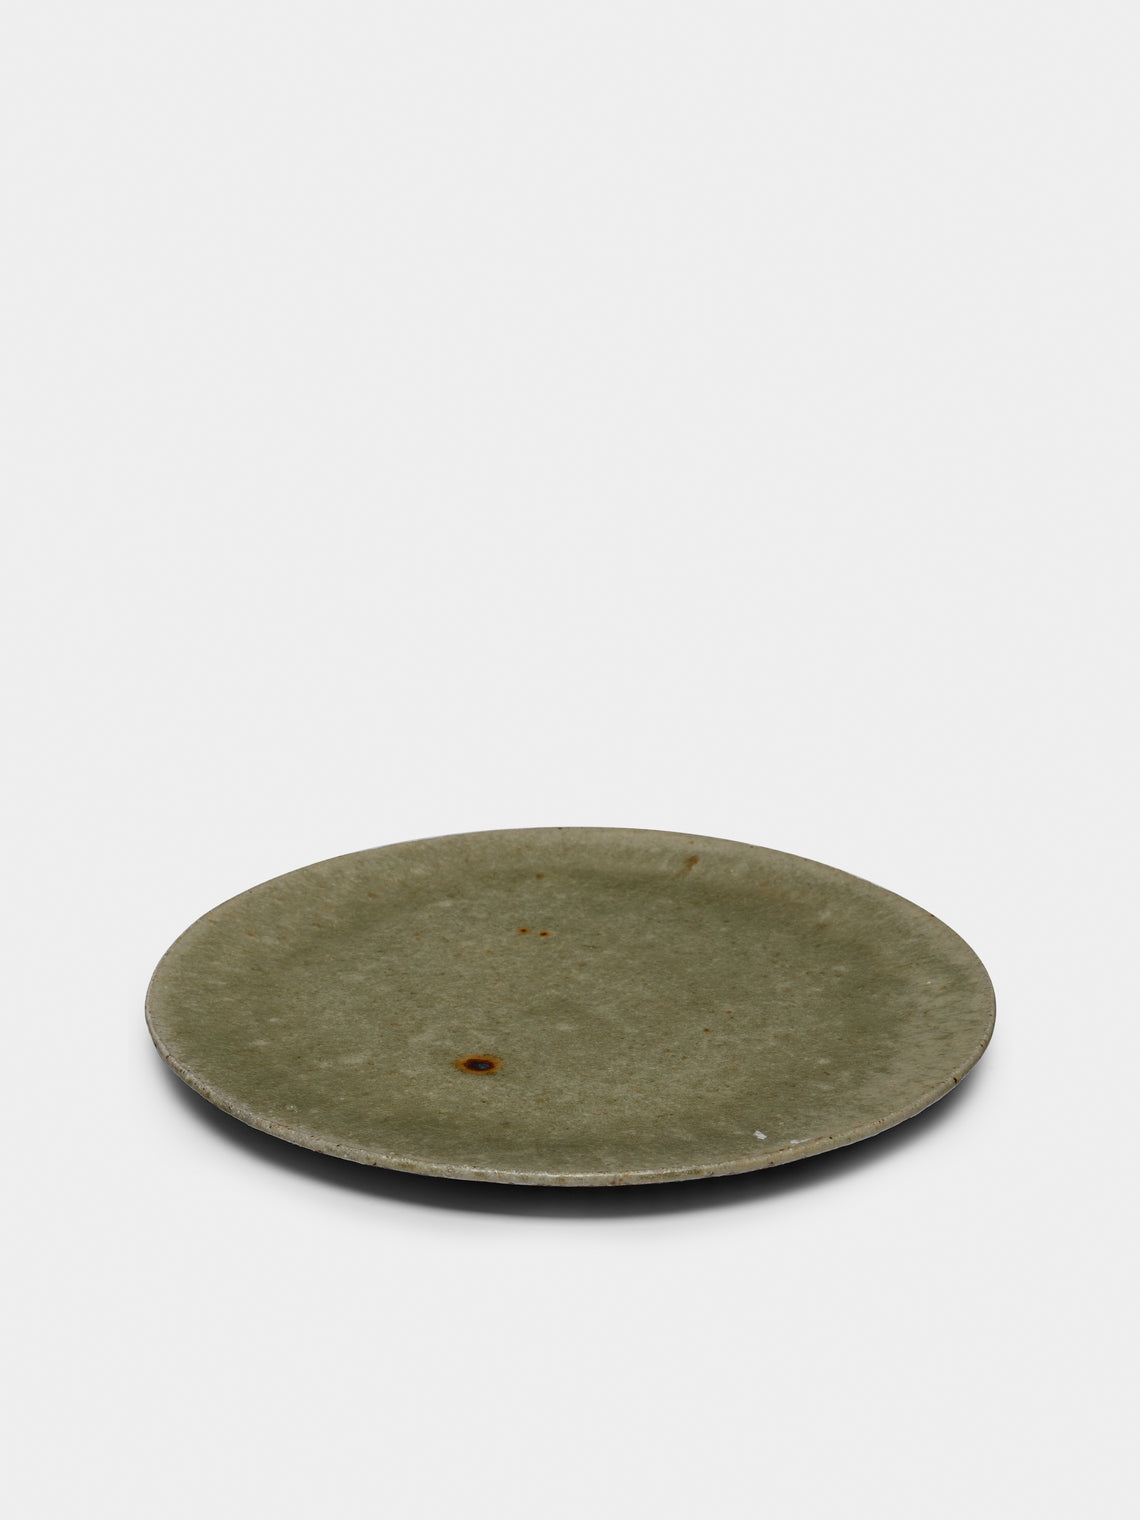 Ingot Objects - Ash-Glazed Ceramic Rimless Dinner Plate - Beige - ABASK